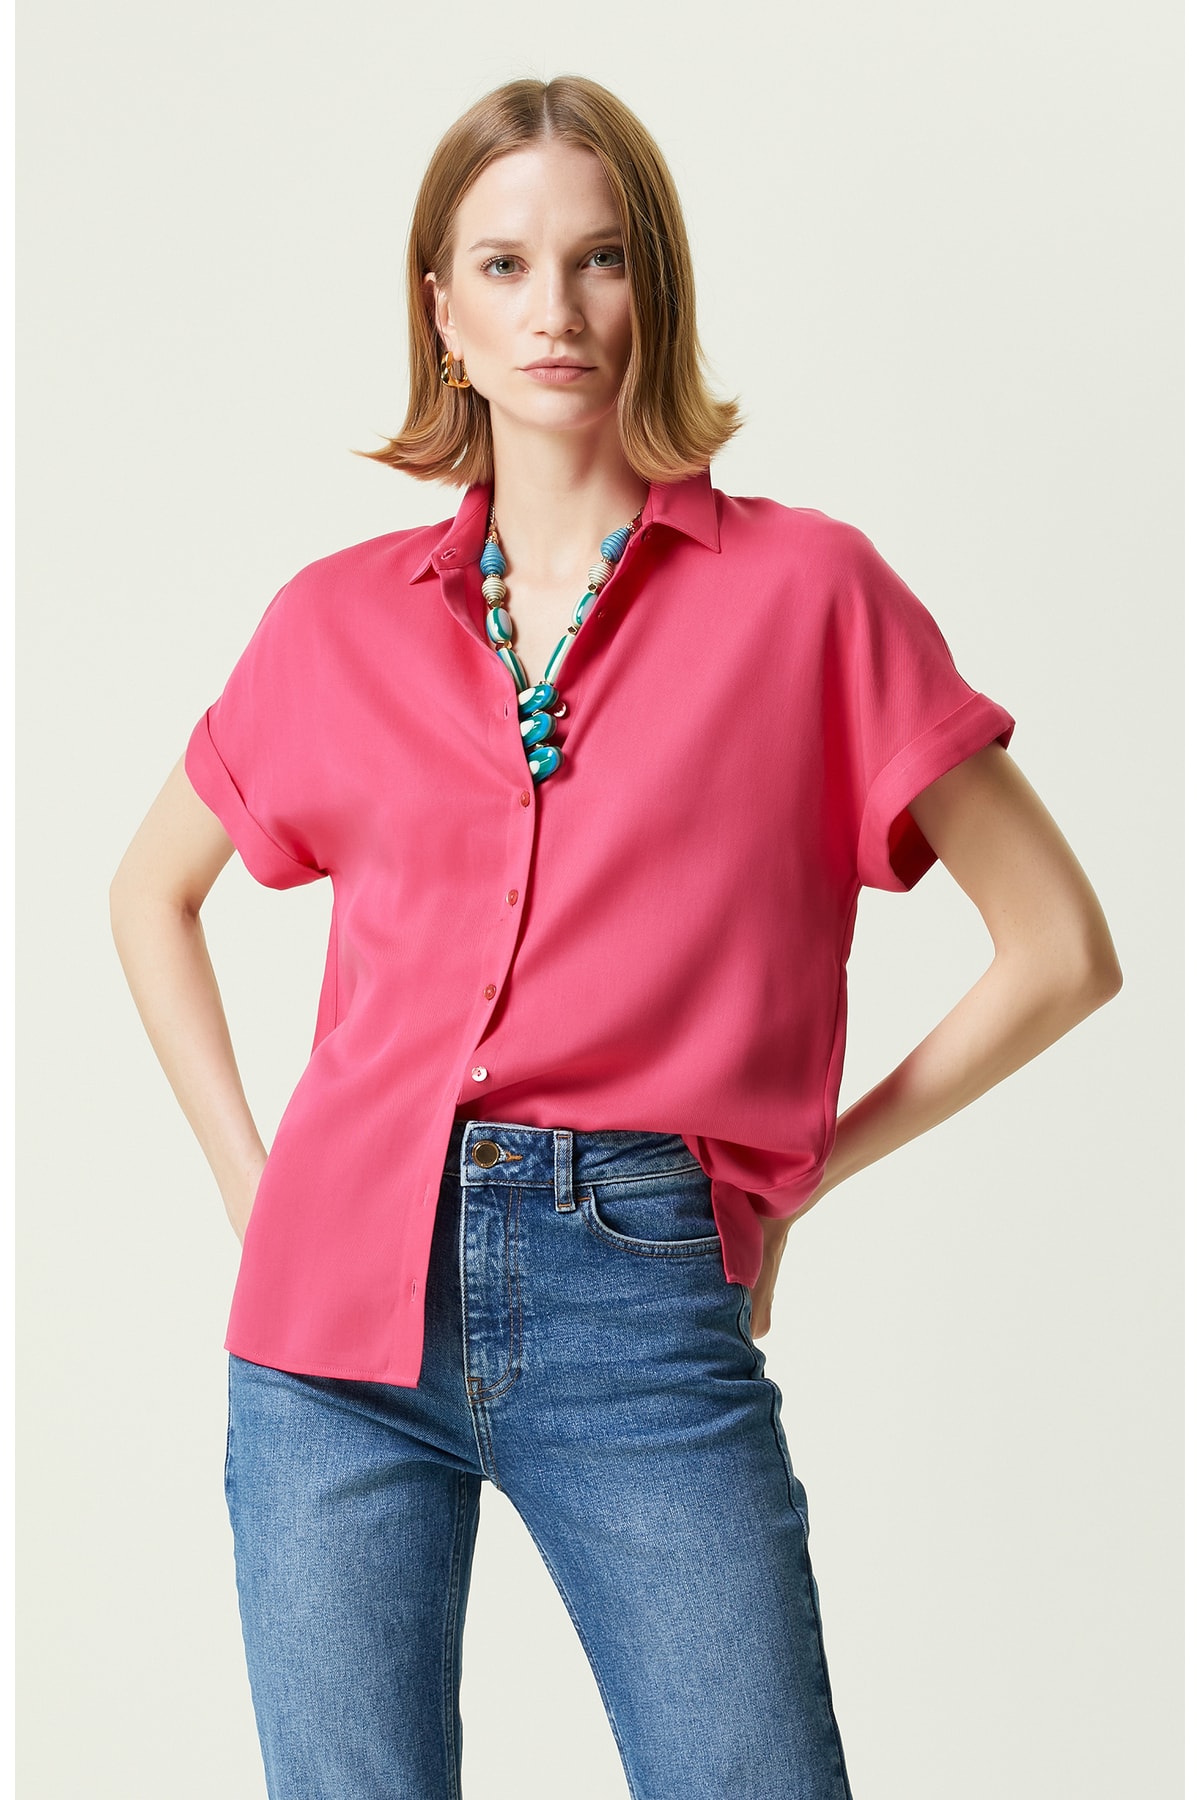 

Рубашка с коротким рукавом цвета фуксии Network, розовый